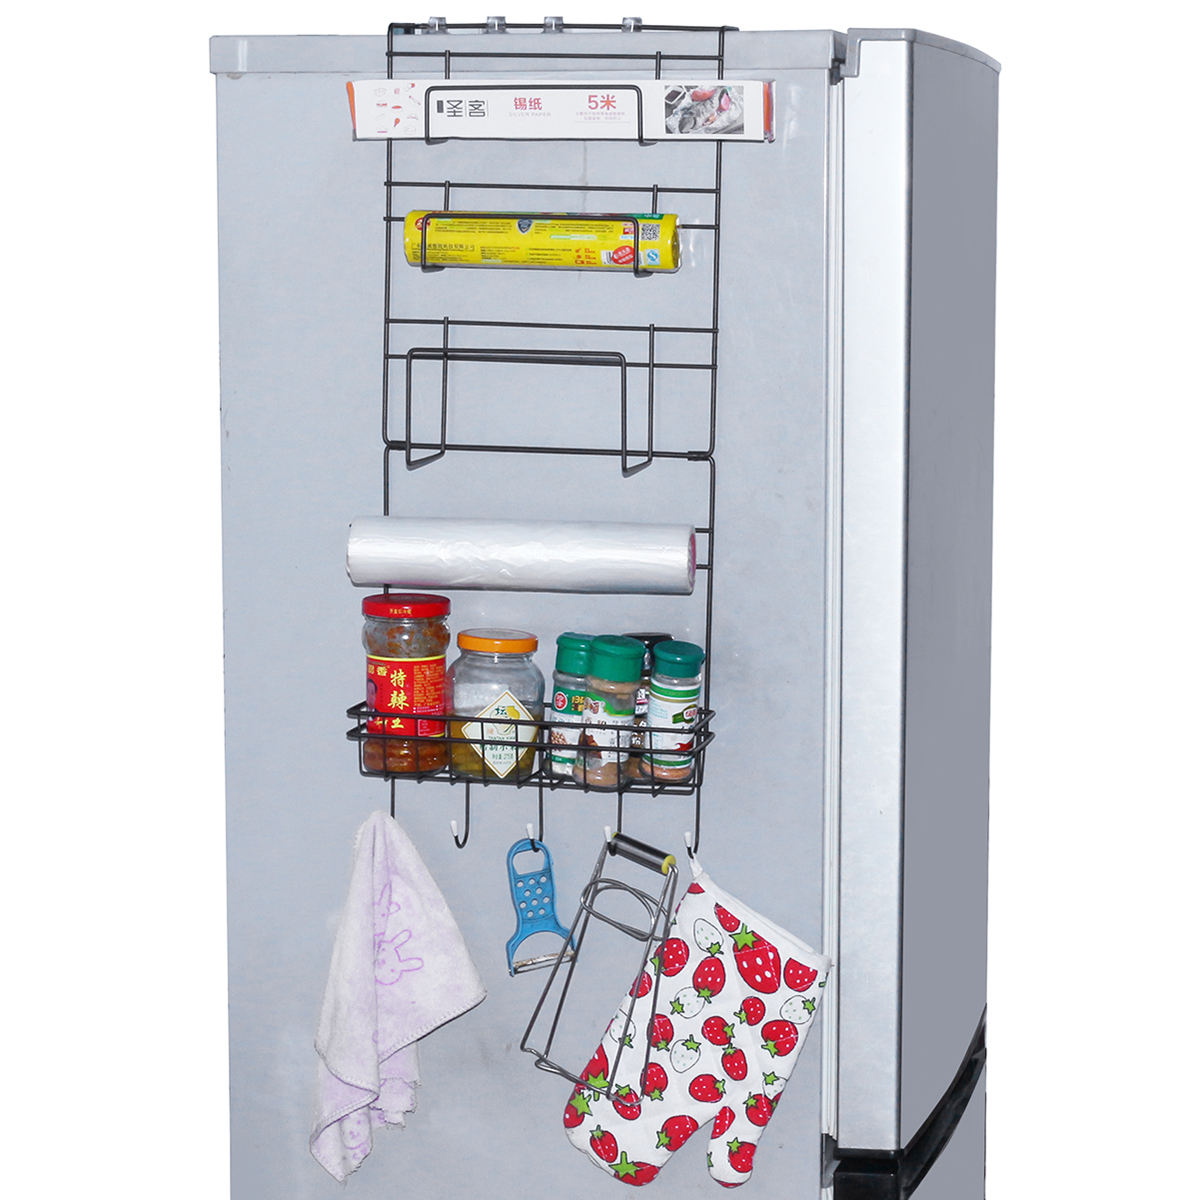 5 Tiers Iron Wall Mount Kitchen Freezer Door Spice Rack Storage Shelf Cabinet Organizer Fridge Holder